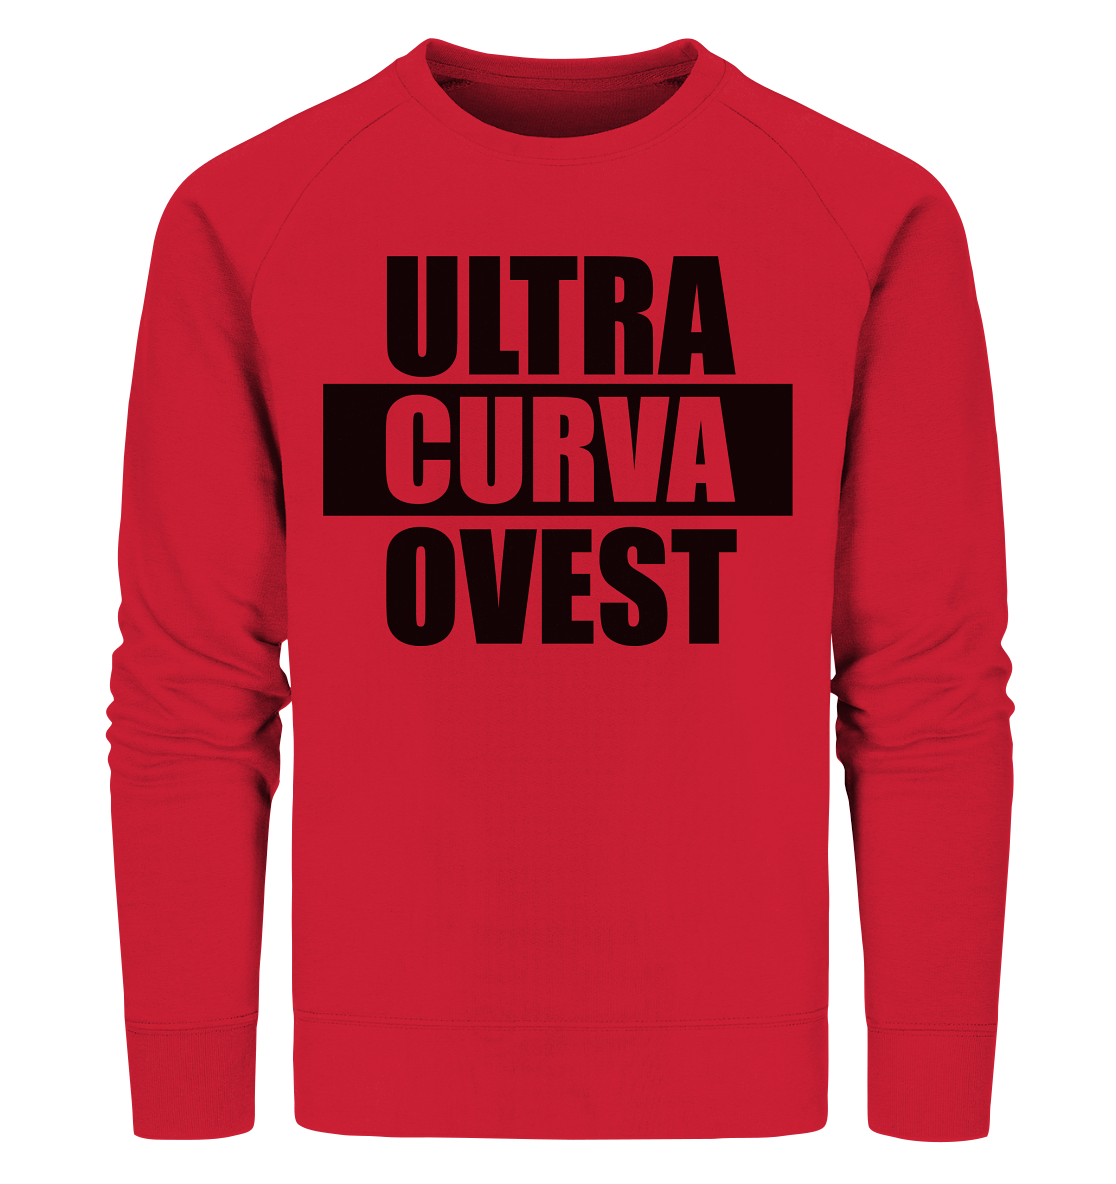 N.O.S.W. BLOCK Ultras Sweater "ULTRA CURVA OVEST" Männer Organic Sweatshirt rot